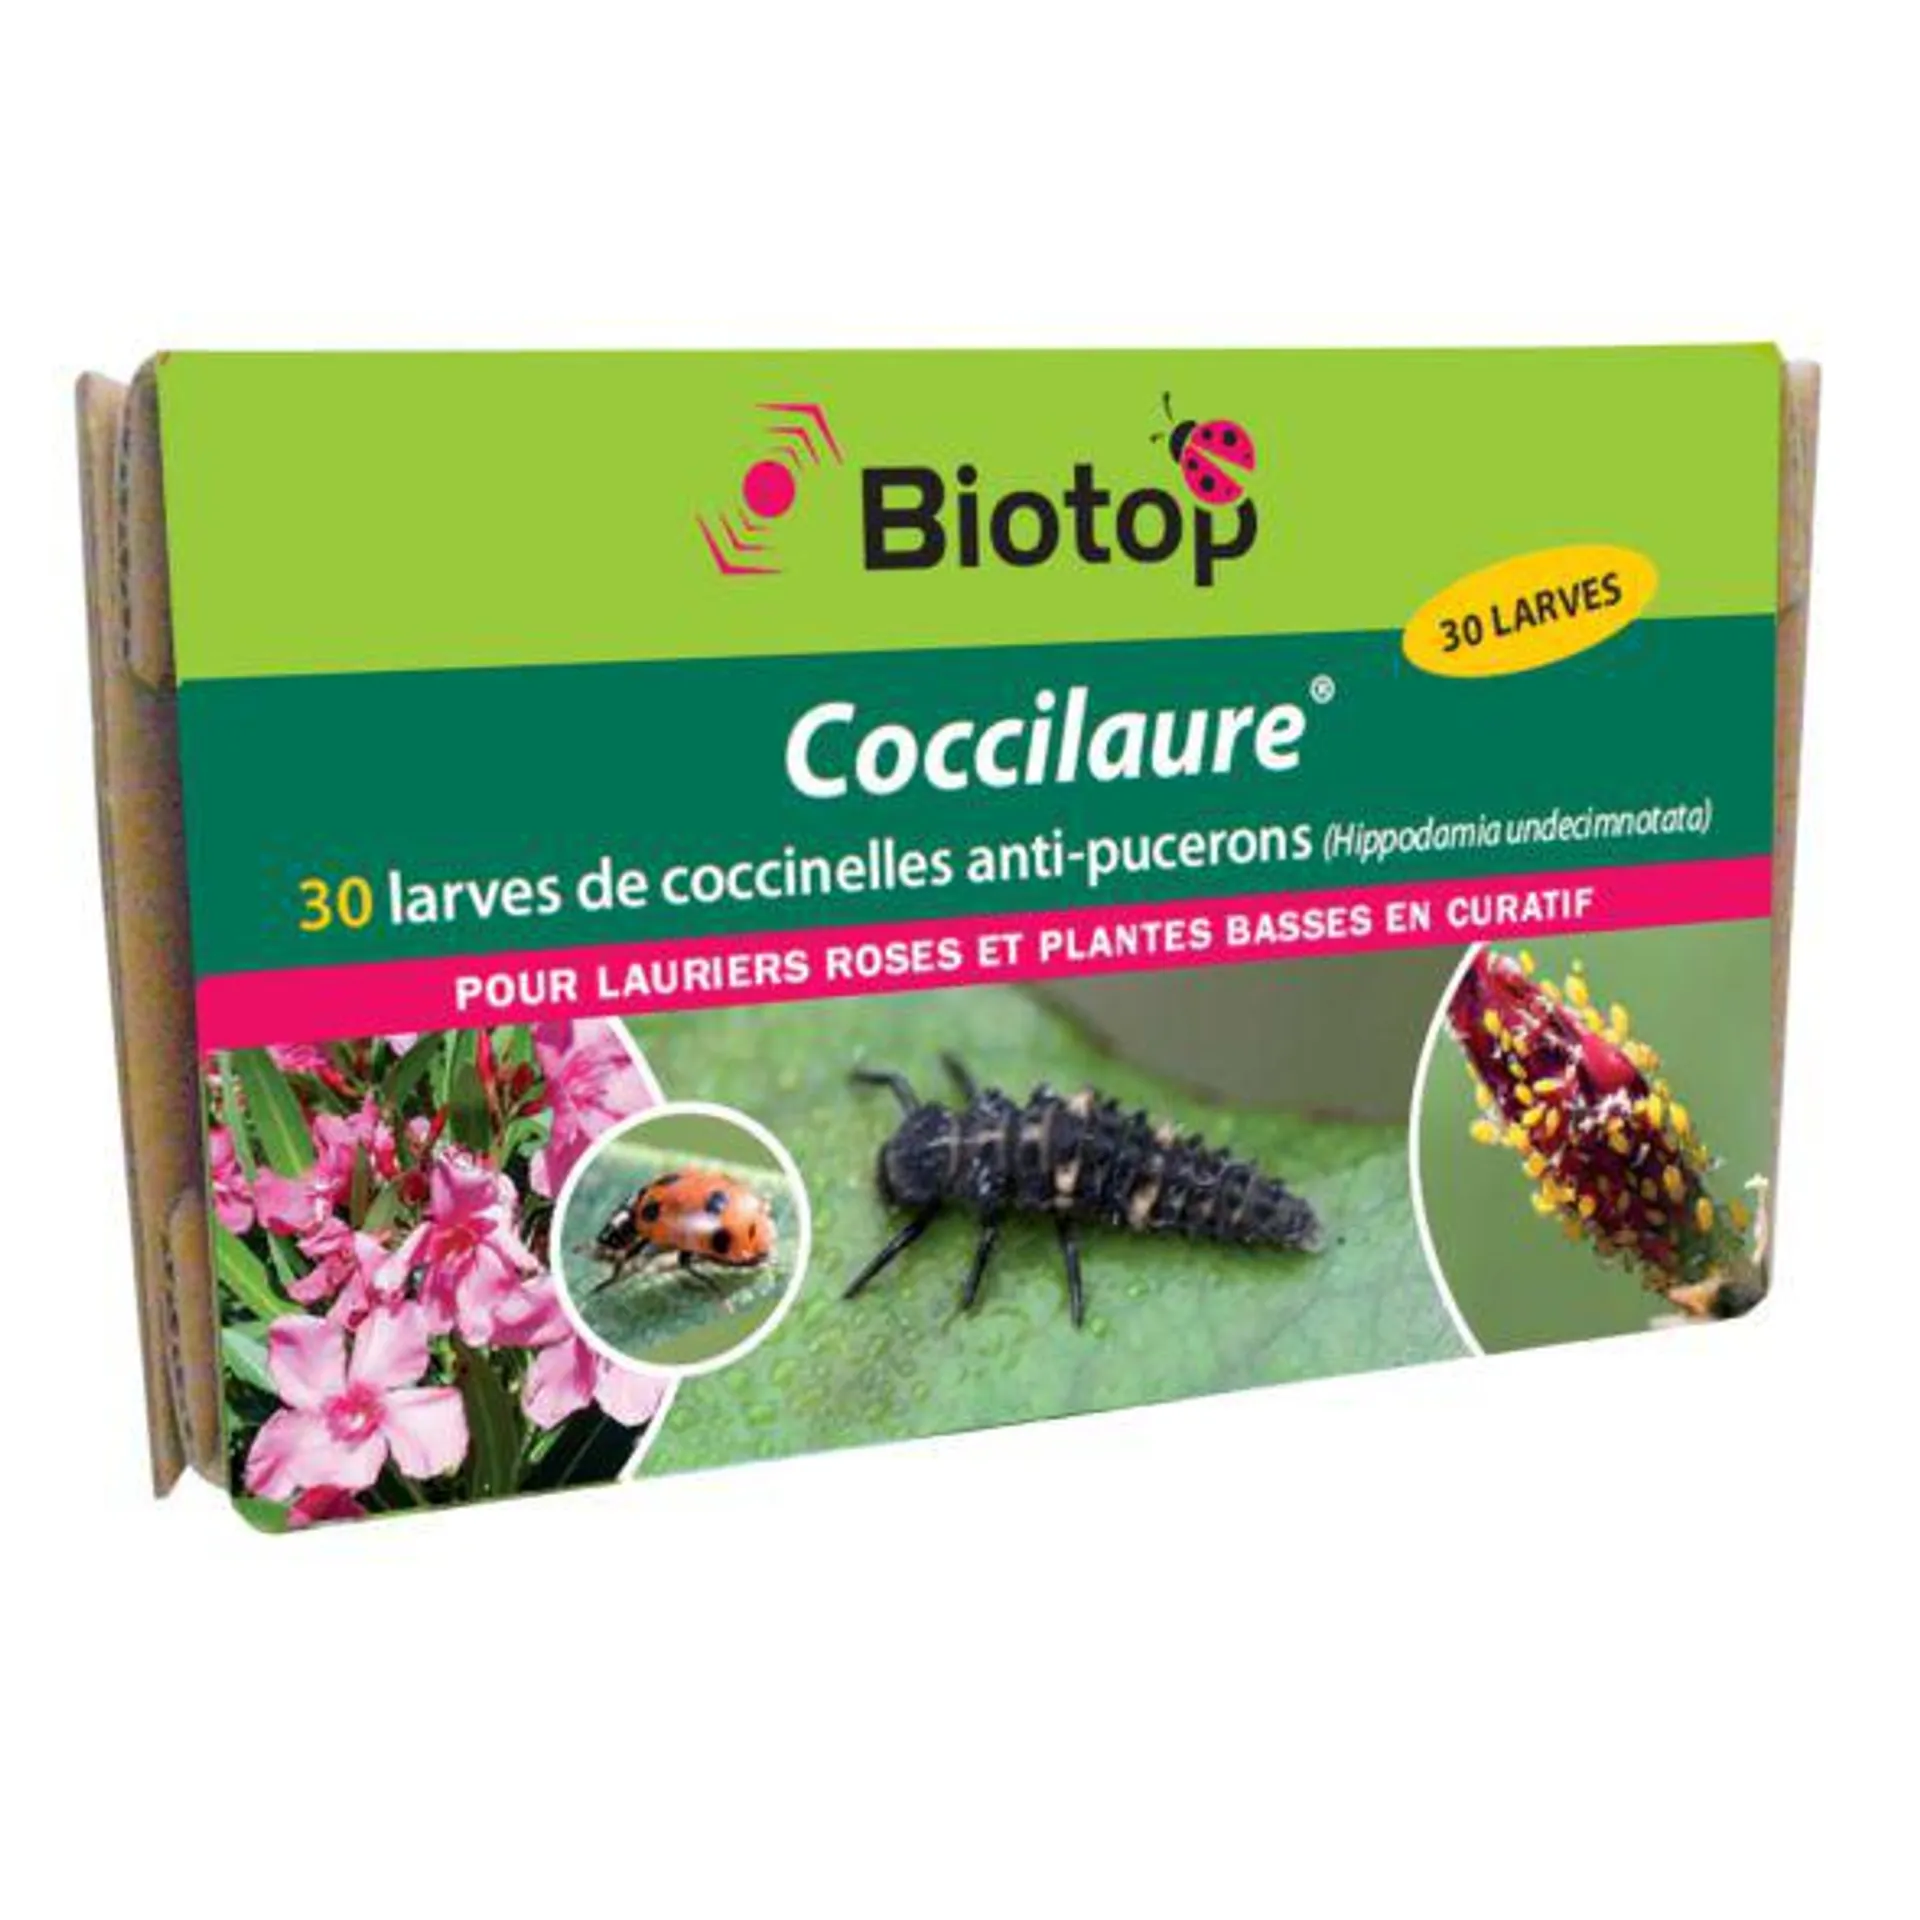 Coccilaure coccinelles anti-pucerons pour plantes basses BIOTOP - 30 larves